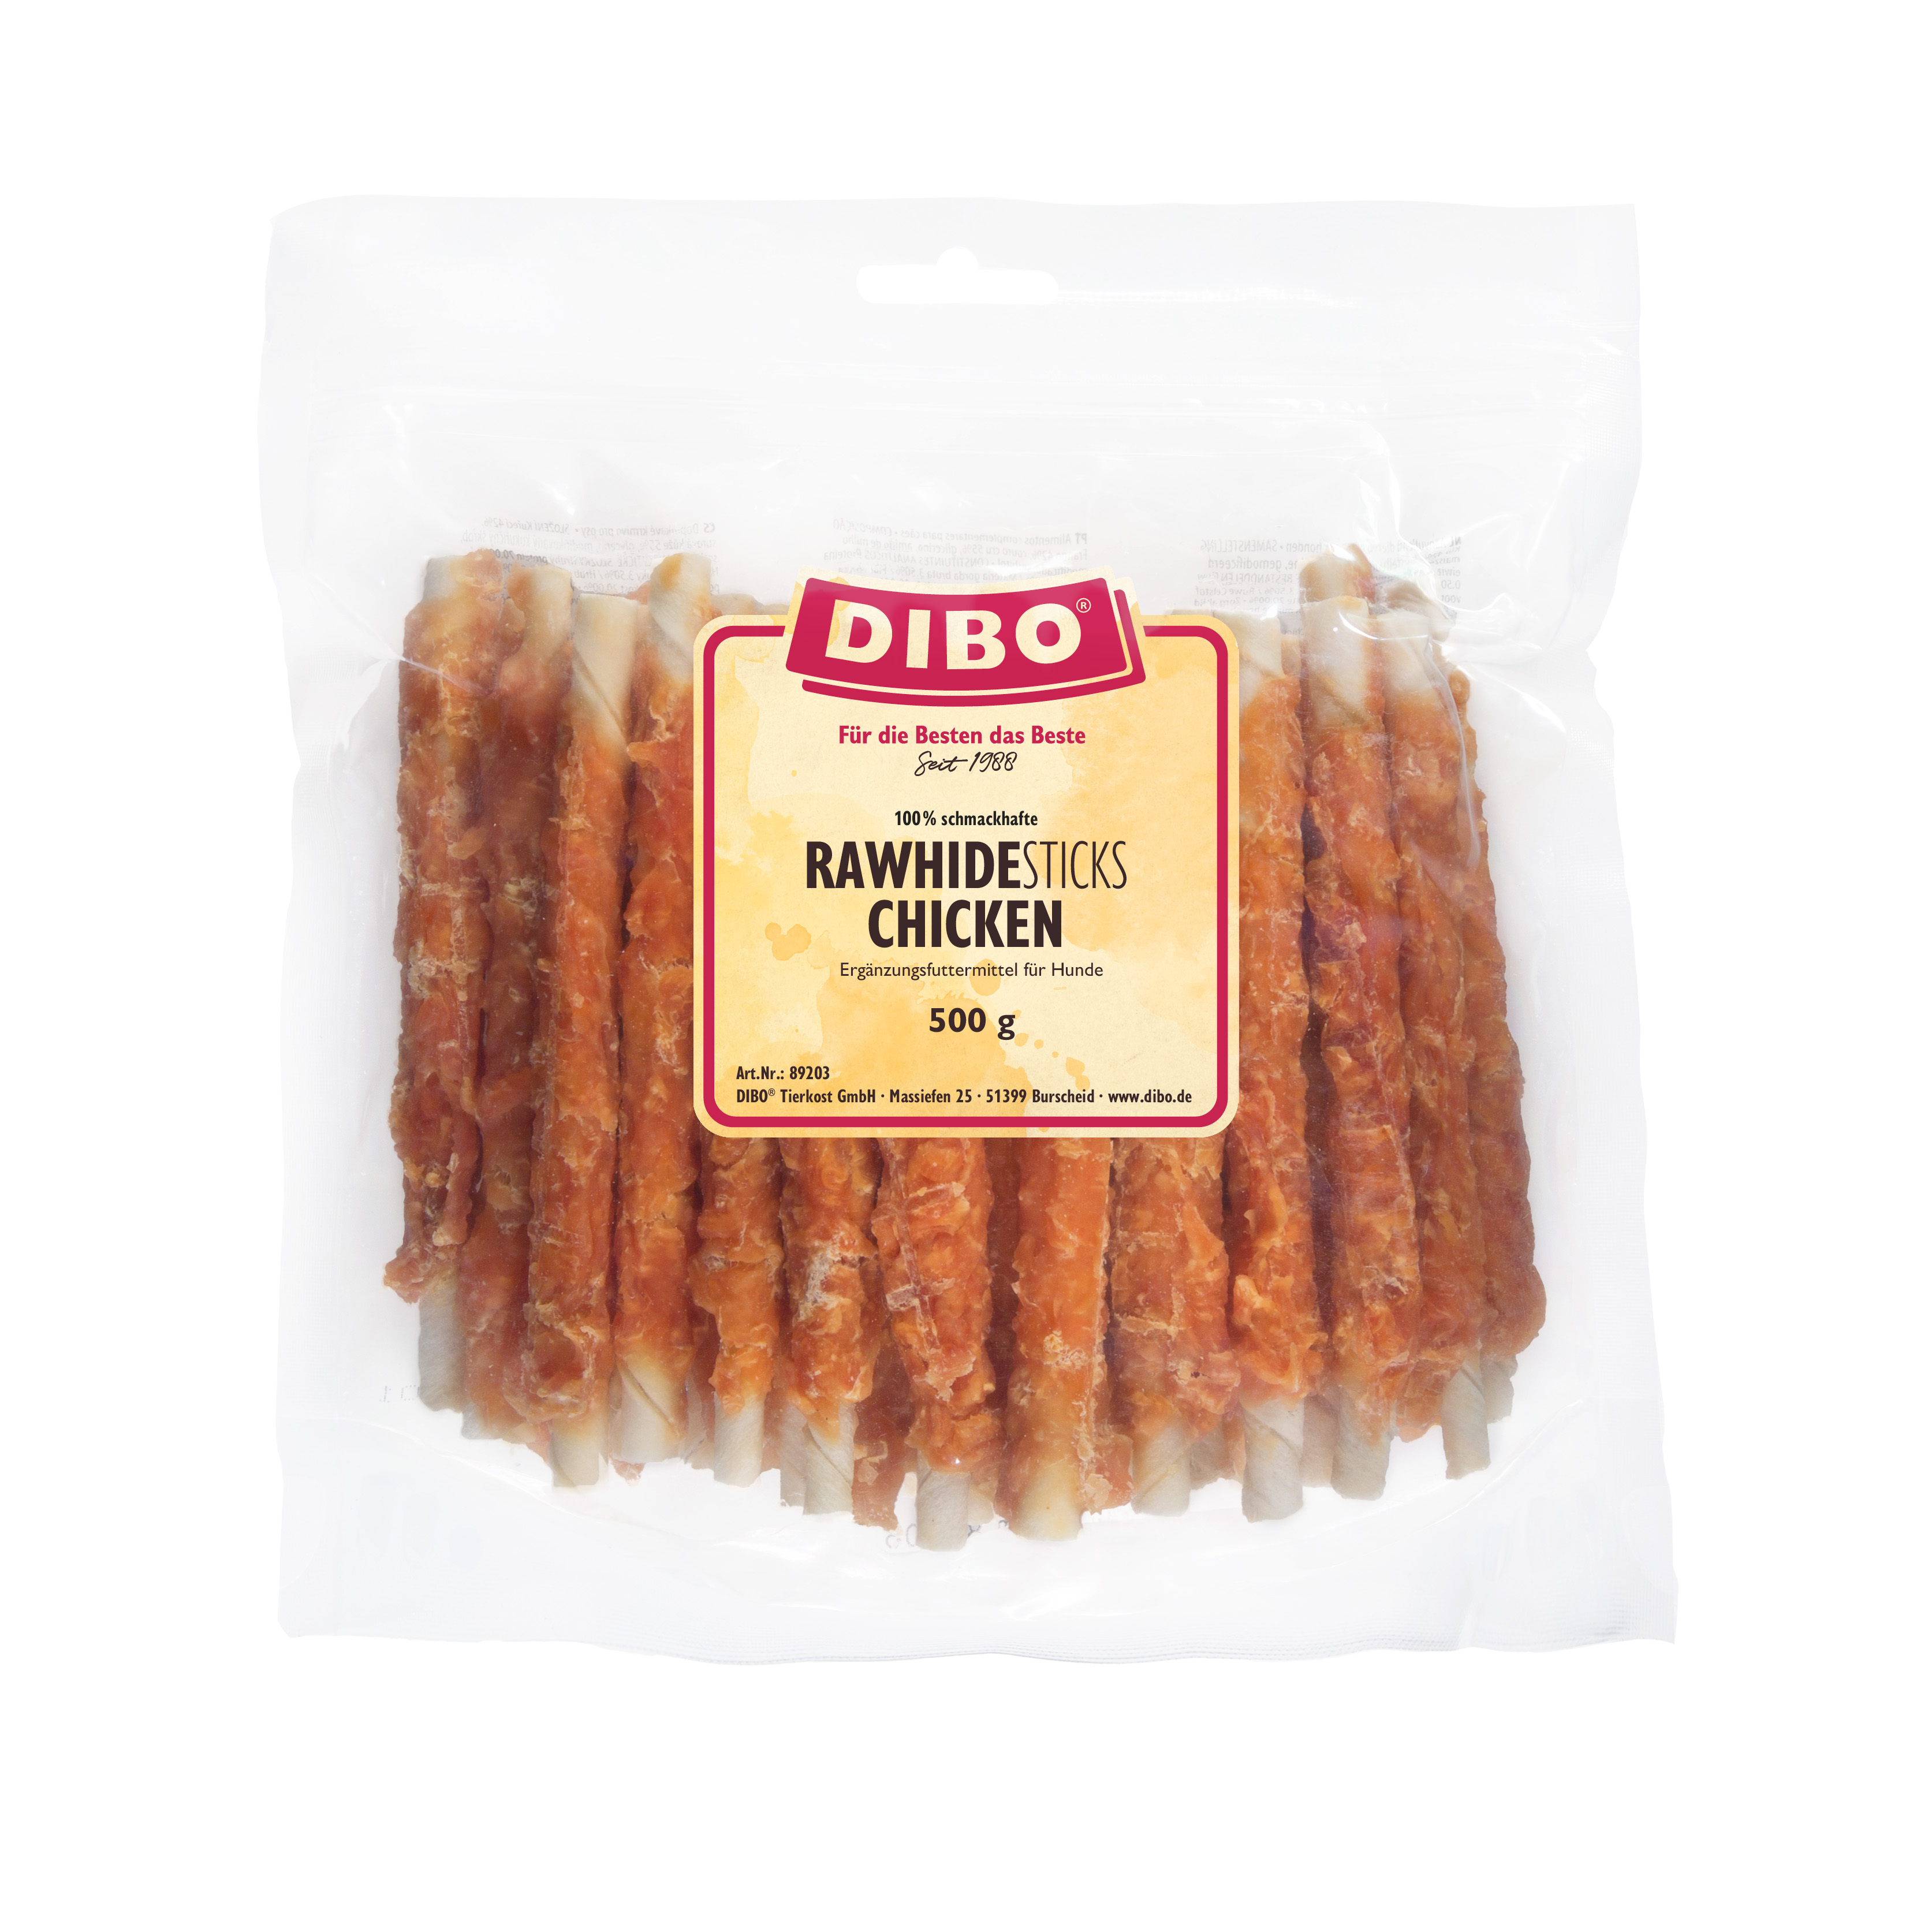 DIBO RawHide Sticks Chicken, 500g-Beutel